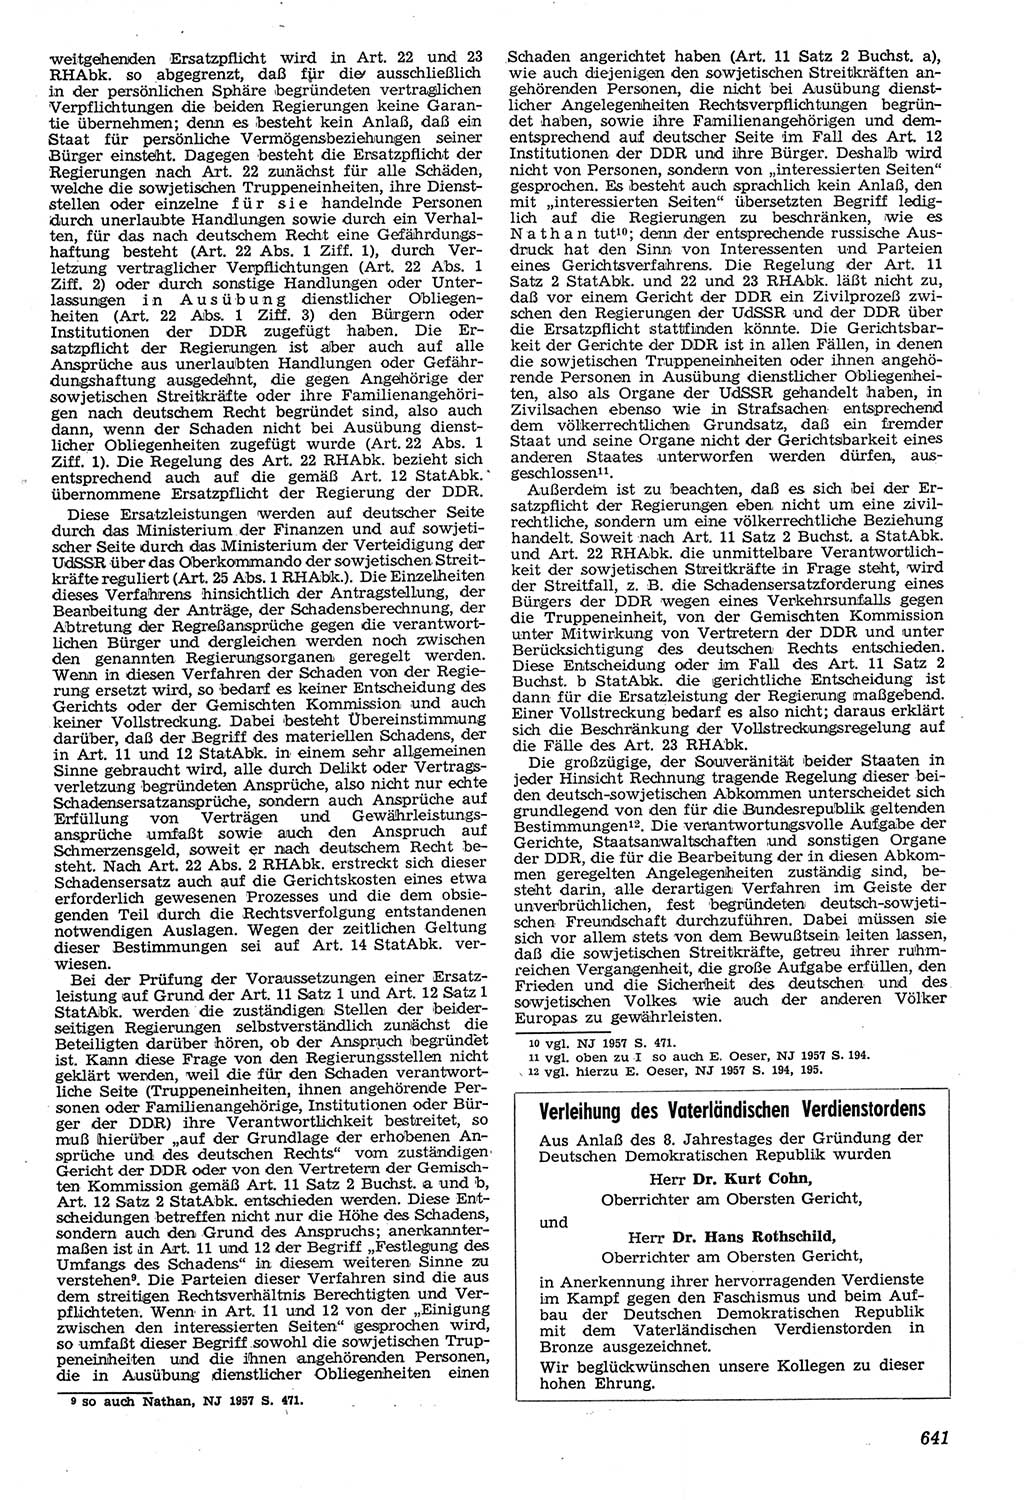 Neue Justiz (NJ), Zeitschrift für Recht und Rechtswissenschaft [Deutsche Demokratische Republik (DDR)], 11. Jahrgang 1957, Seite 641 (NJ DDR 1957, S. 641)